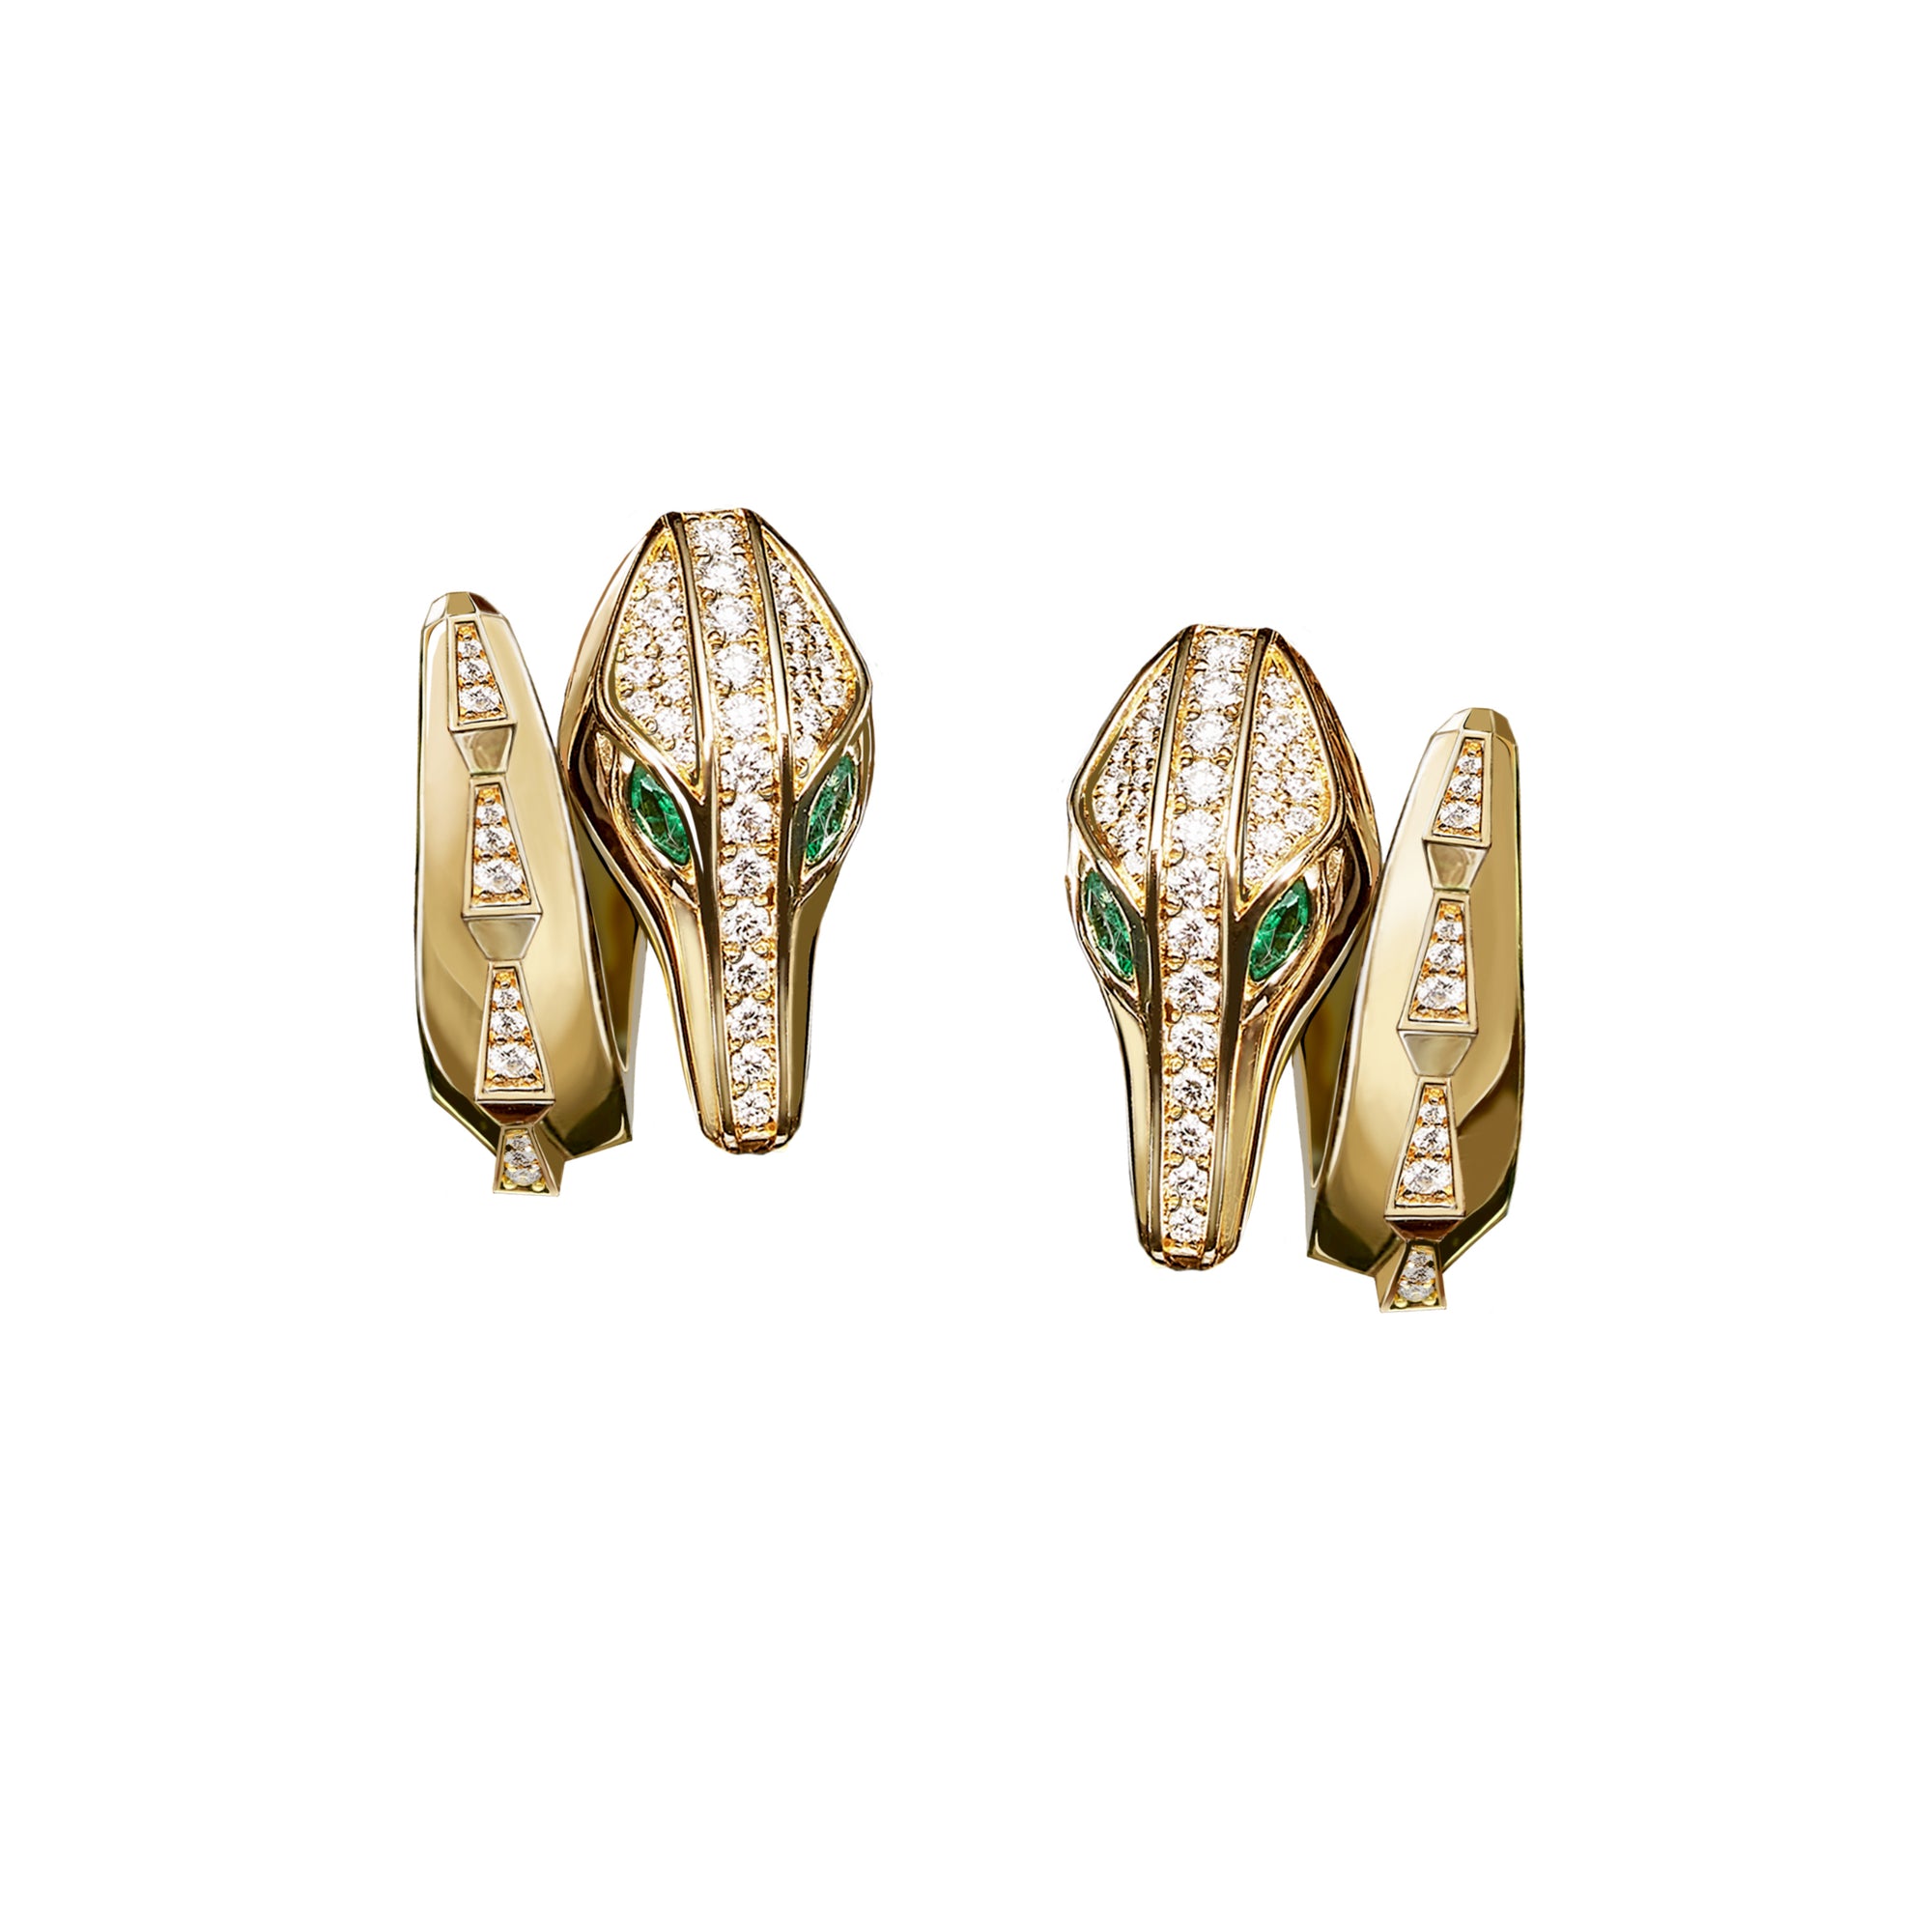 SIGNATURE SPIKE CROCO HALF SET DIAMOND EARRINGS YELLOW GOLD | Earring | 18K yellow gold, croco, crocodream, diamonds, earring, earrings, emerald, signature, spike | ORLOV